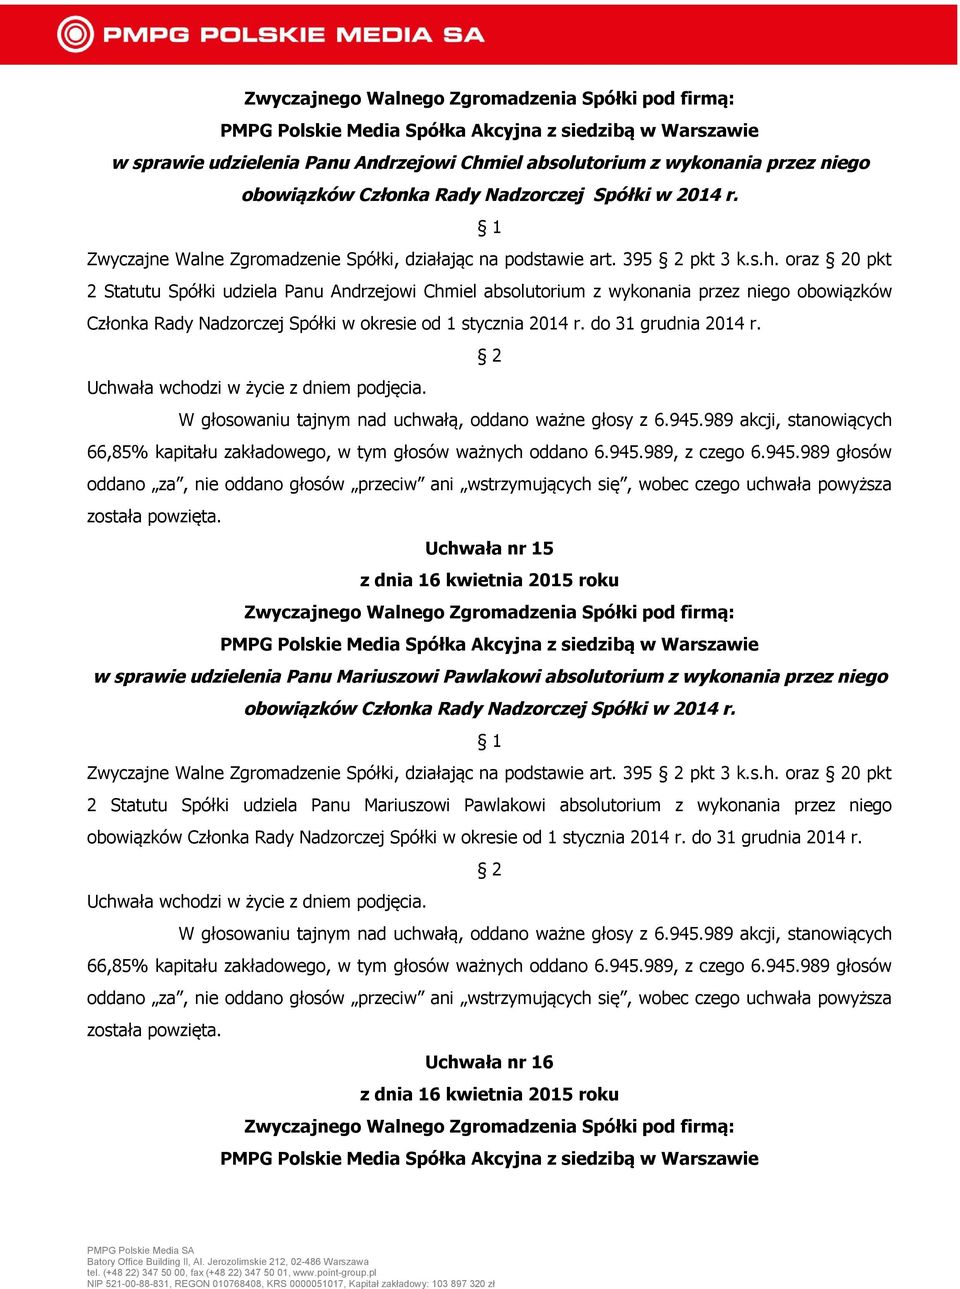 do 31 grudnia 2014 r. została Uchwała nr 15 w sprawie udzielenia Panu Mariuszowi Pawlakowi absolutorium z wykonania przez niego obowiązków Członka Rady Nadzorczej Spółki w 2014 r.